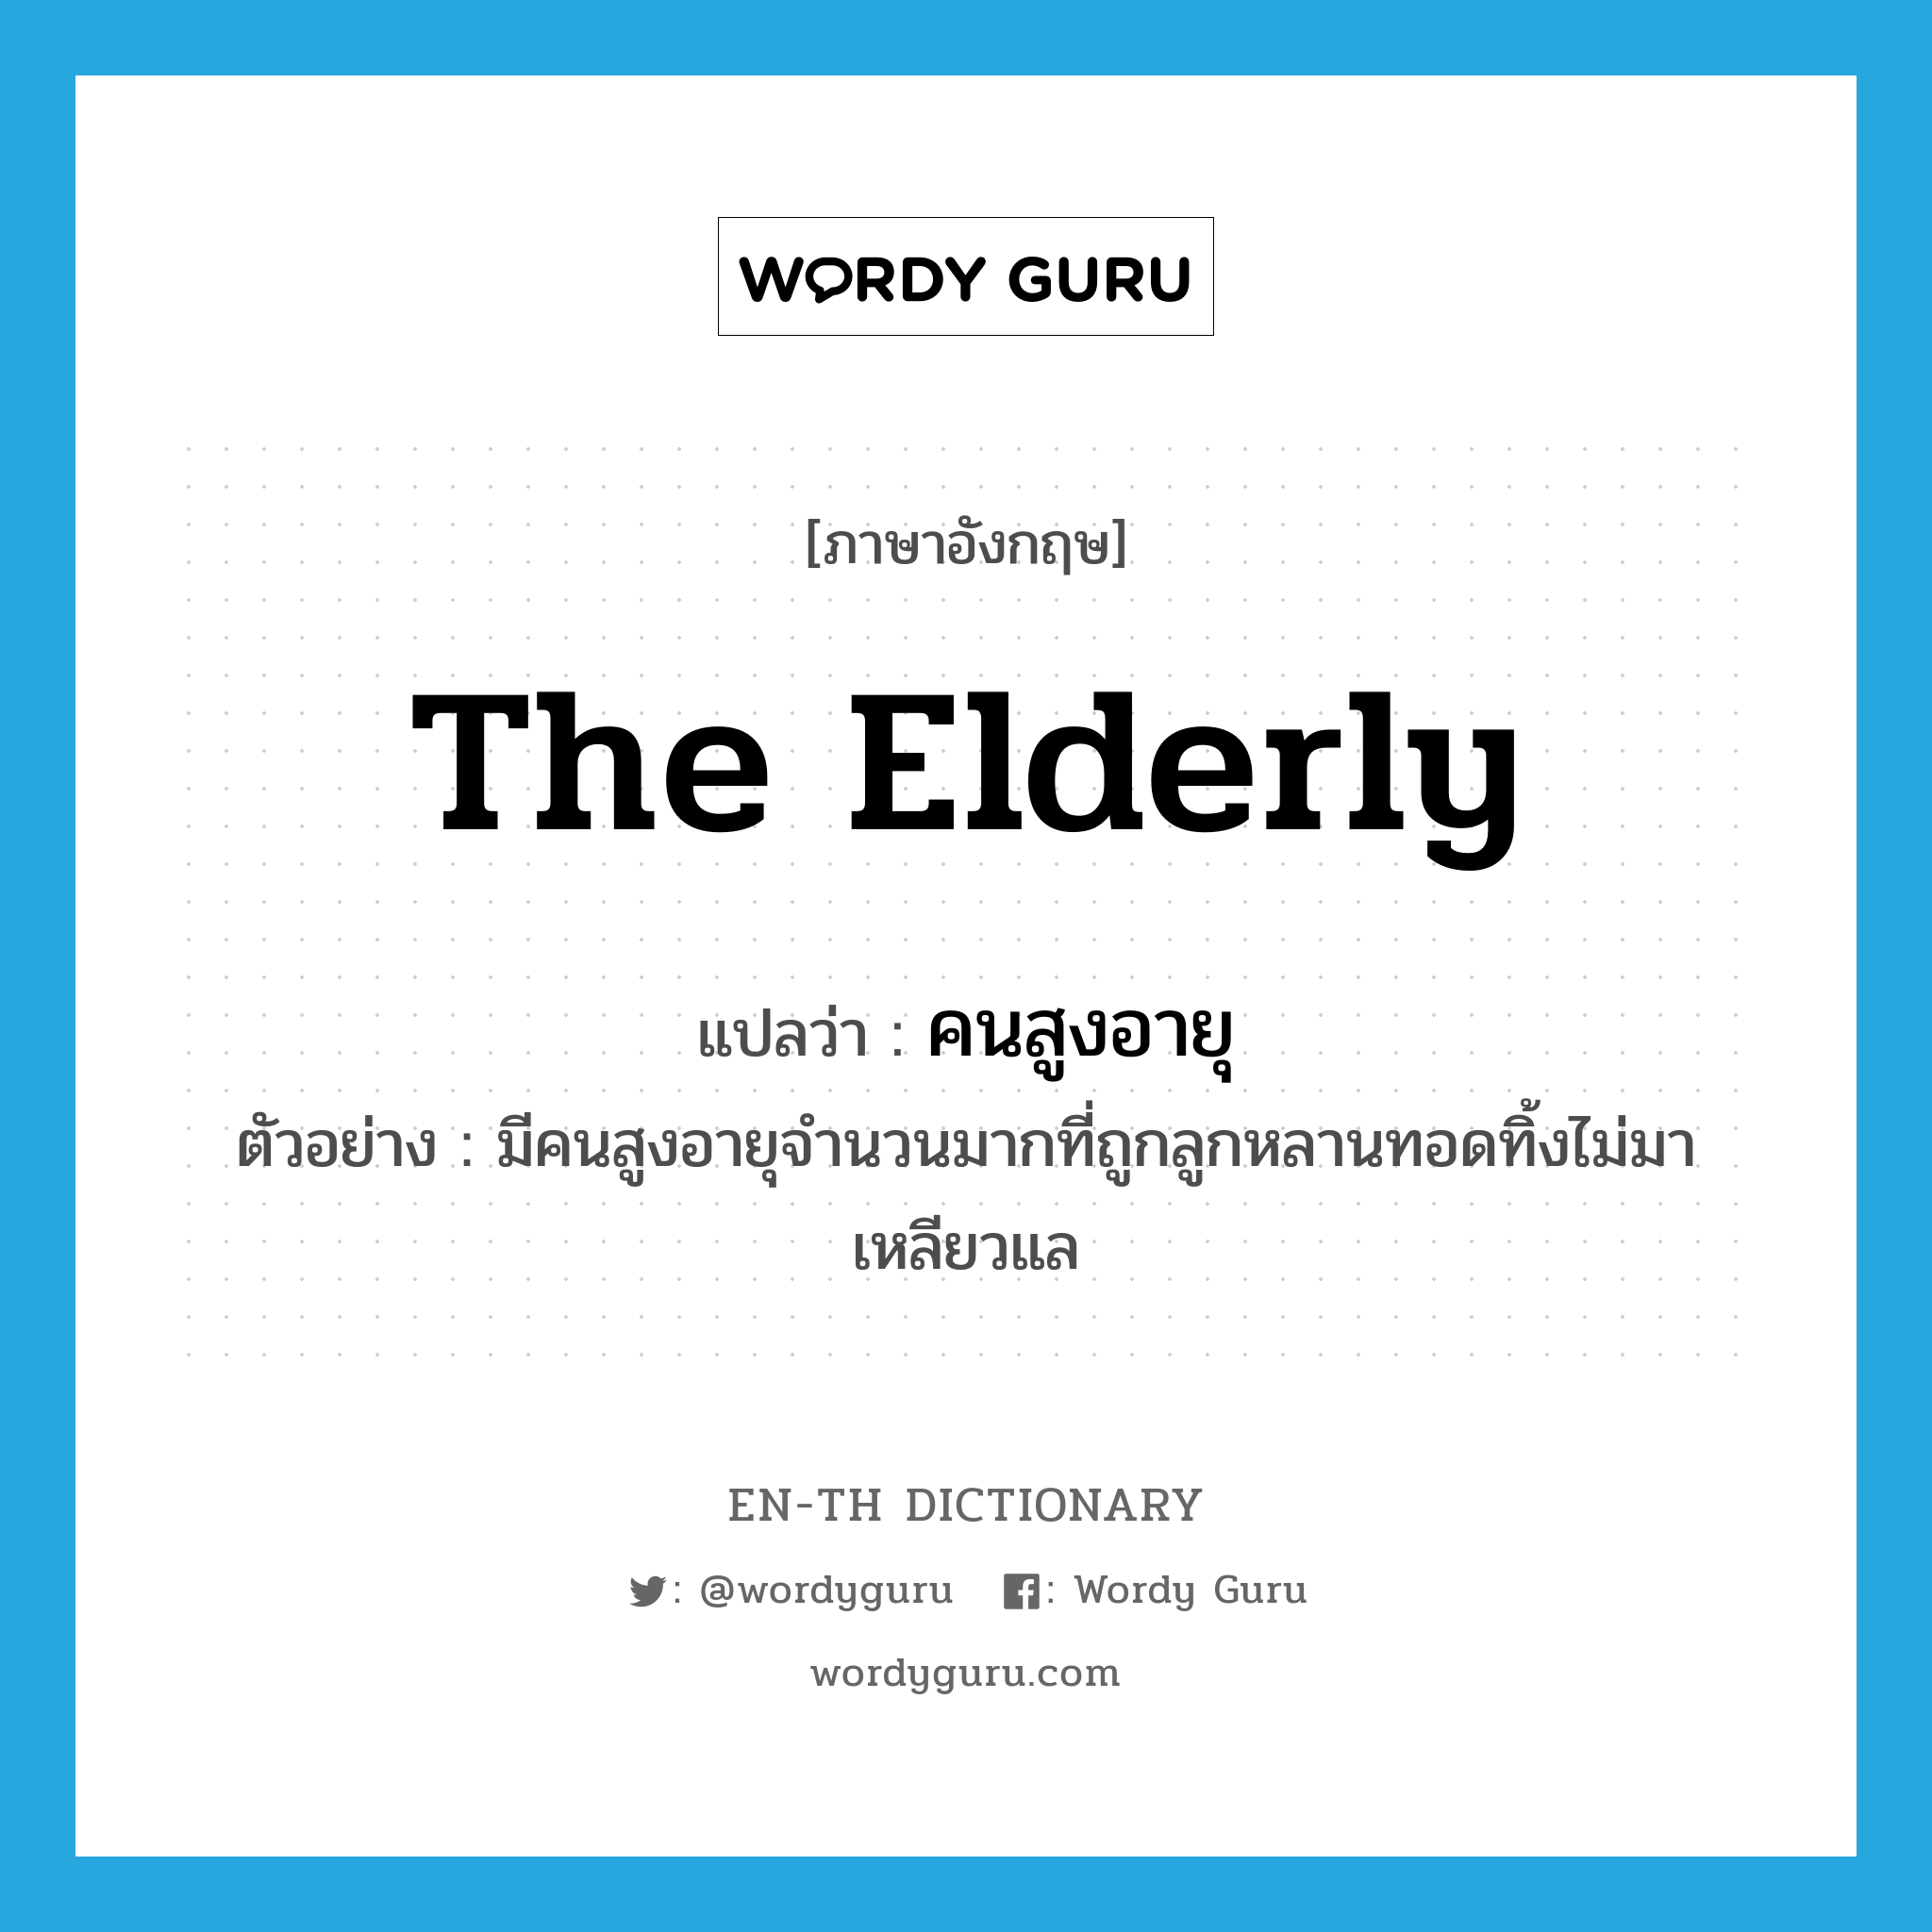 คนสูงอายุ ภาษาอังกฤษ?, คำศัพท์ภาษาอังกฤษ คนสูงอายุ แปลว่า the elderly ประเภท N ตัวอย่าง มีคนสูงอายุจำนวนมากที่ถูกลูกหลานทอดทิ้งไม่มาเหลียวแล หมวด N